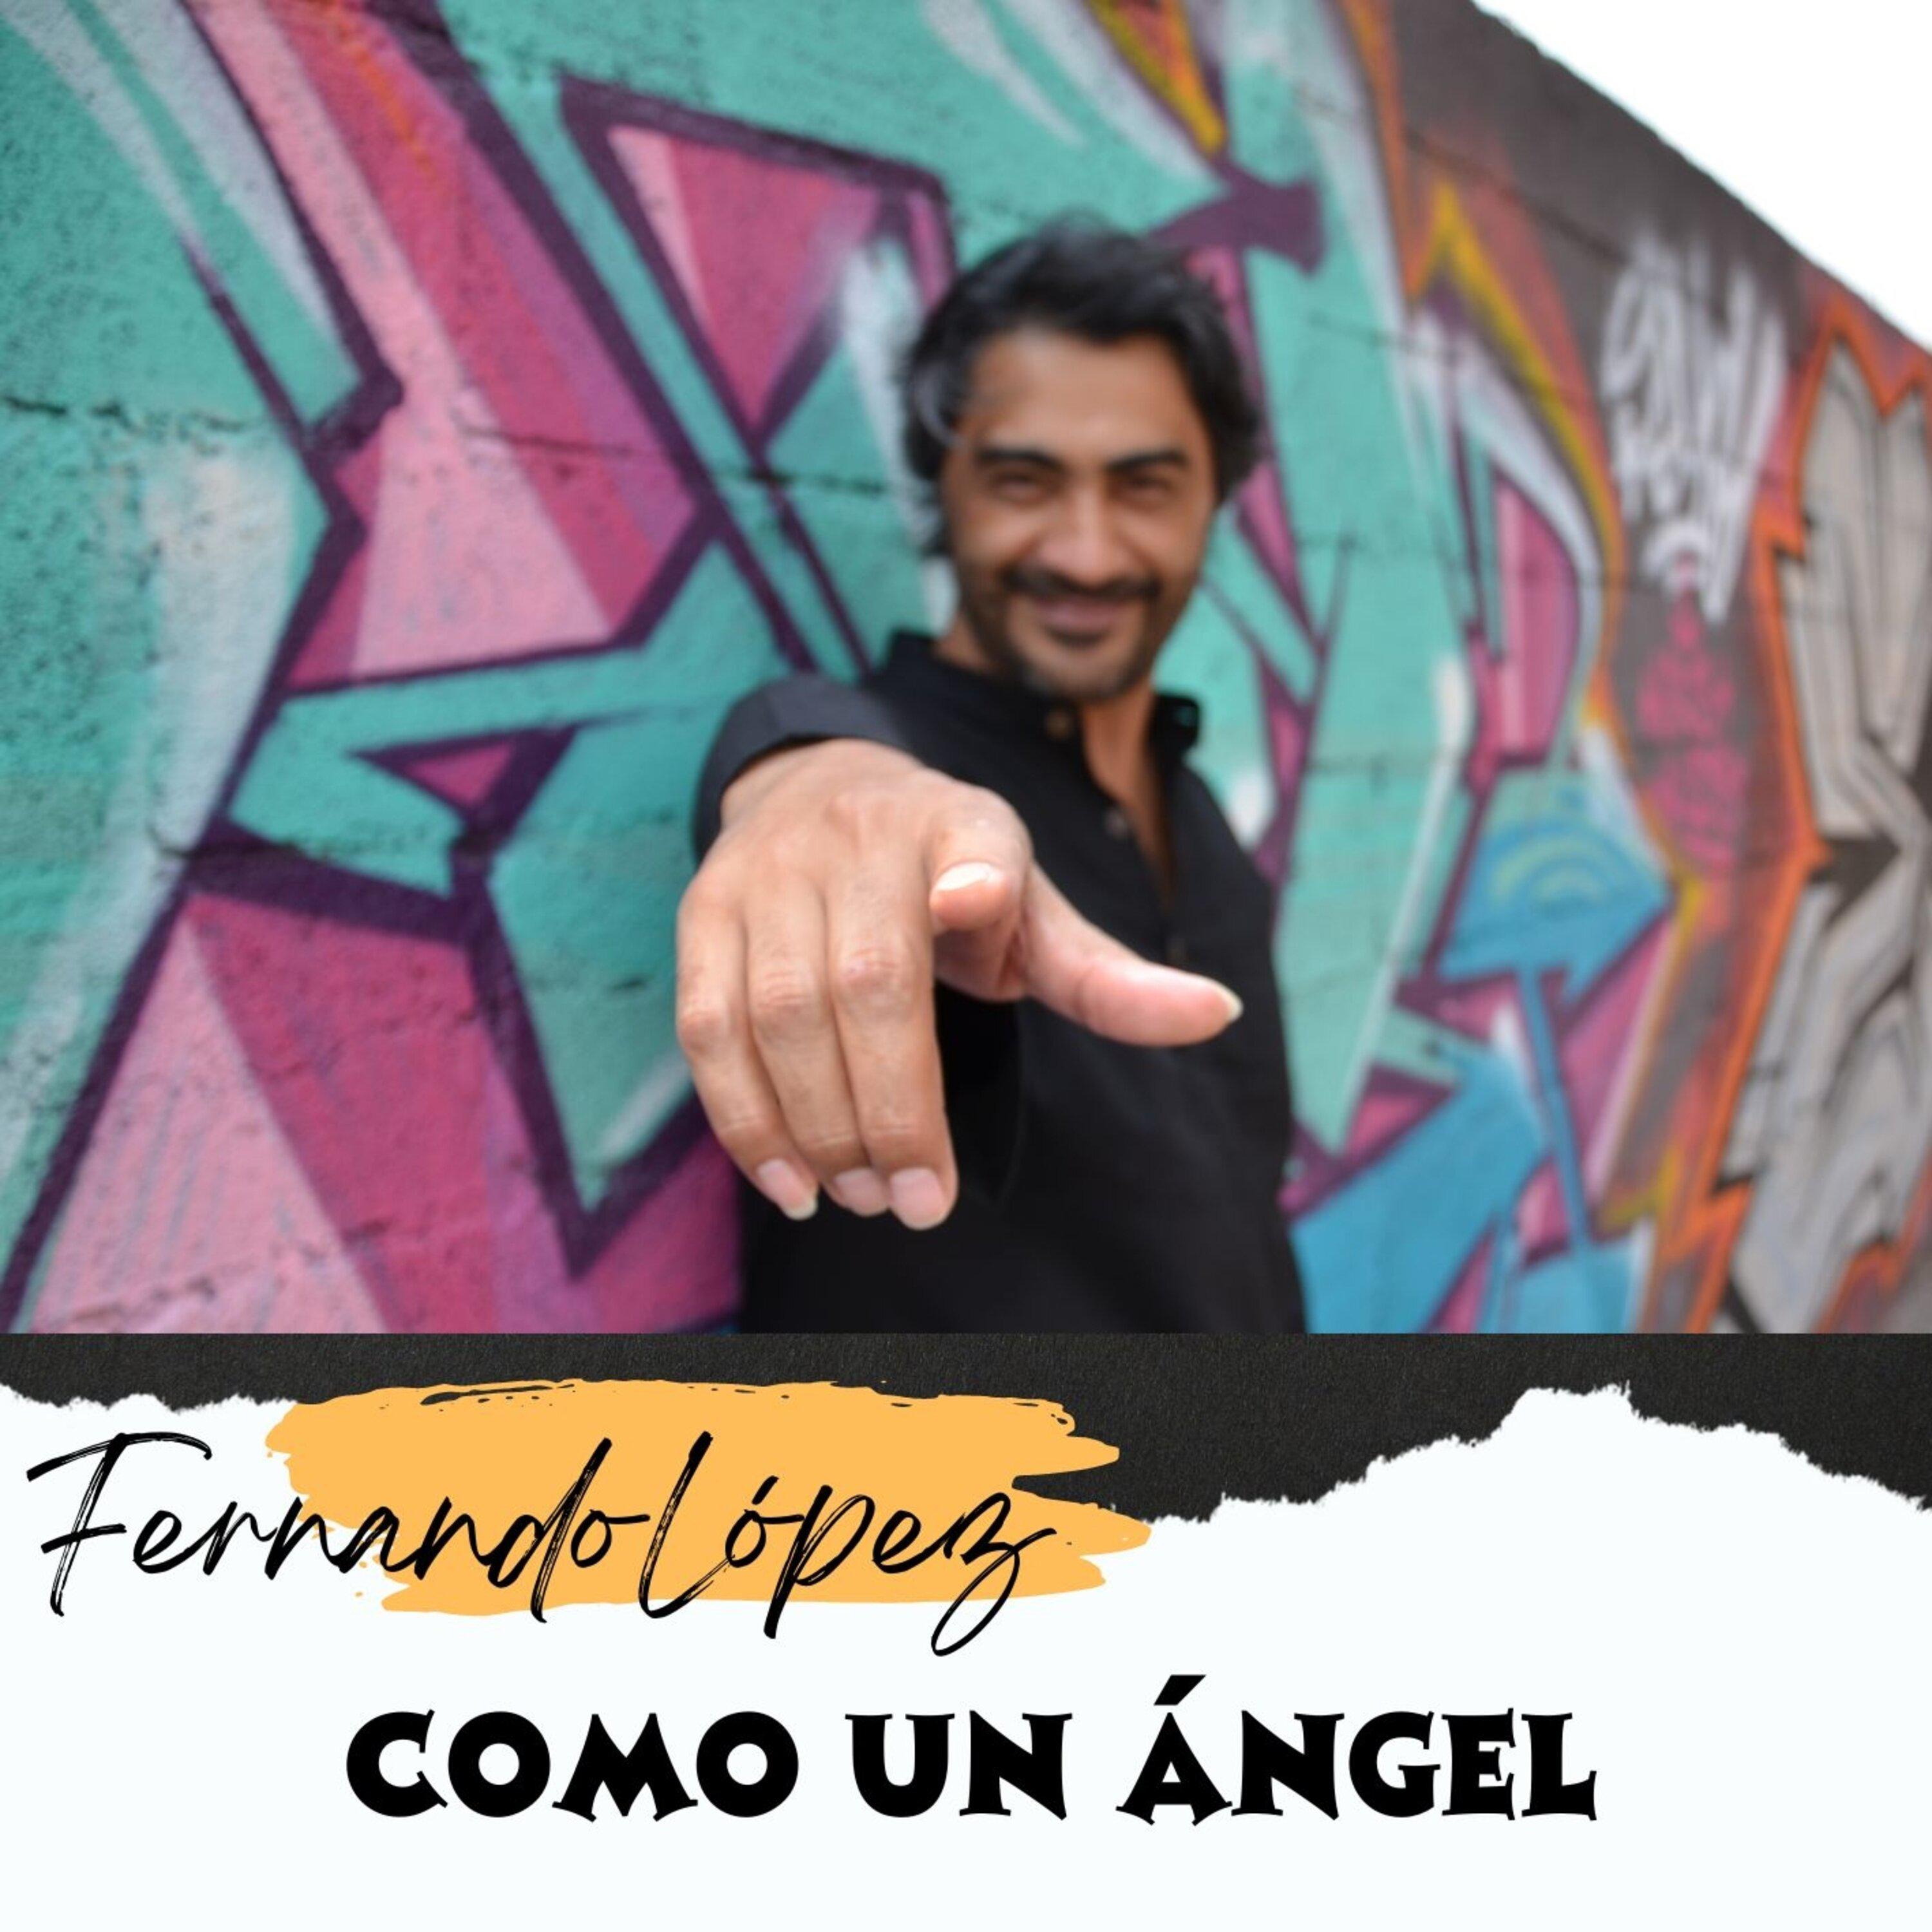 Fernando Lopez - Como un ángel